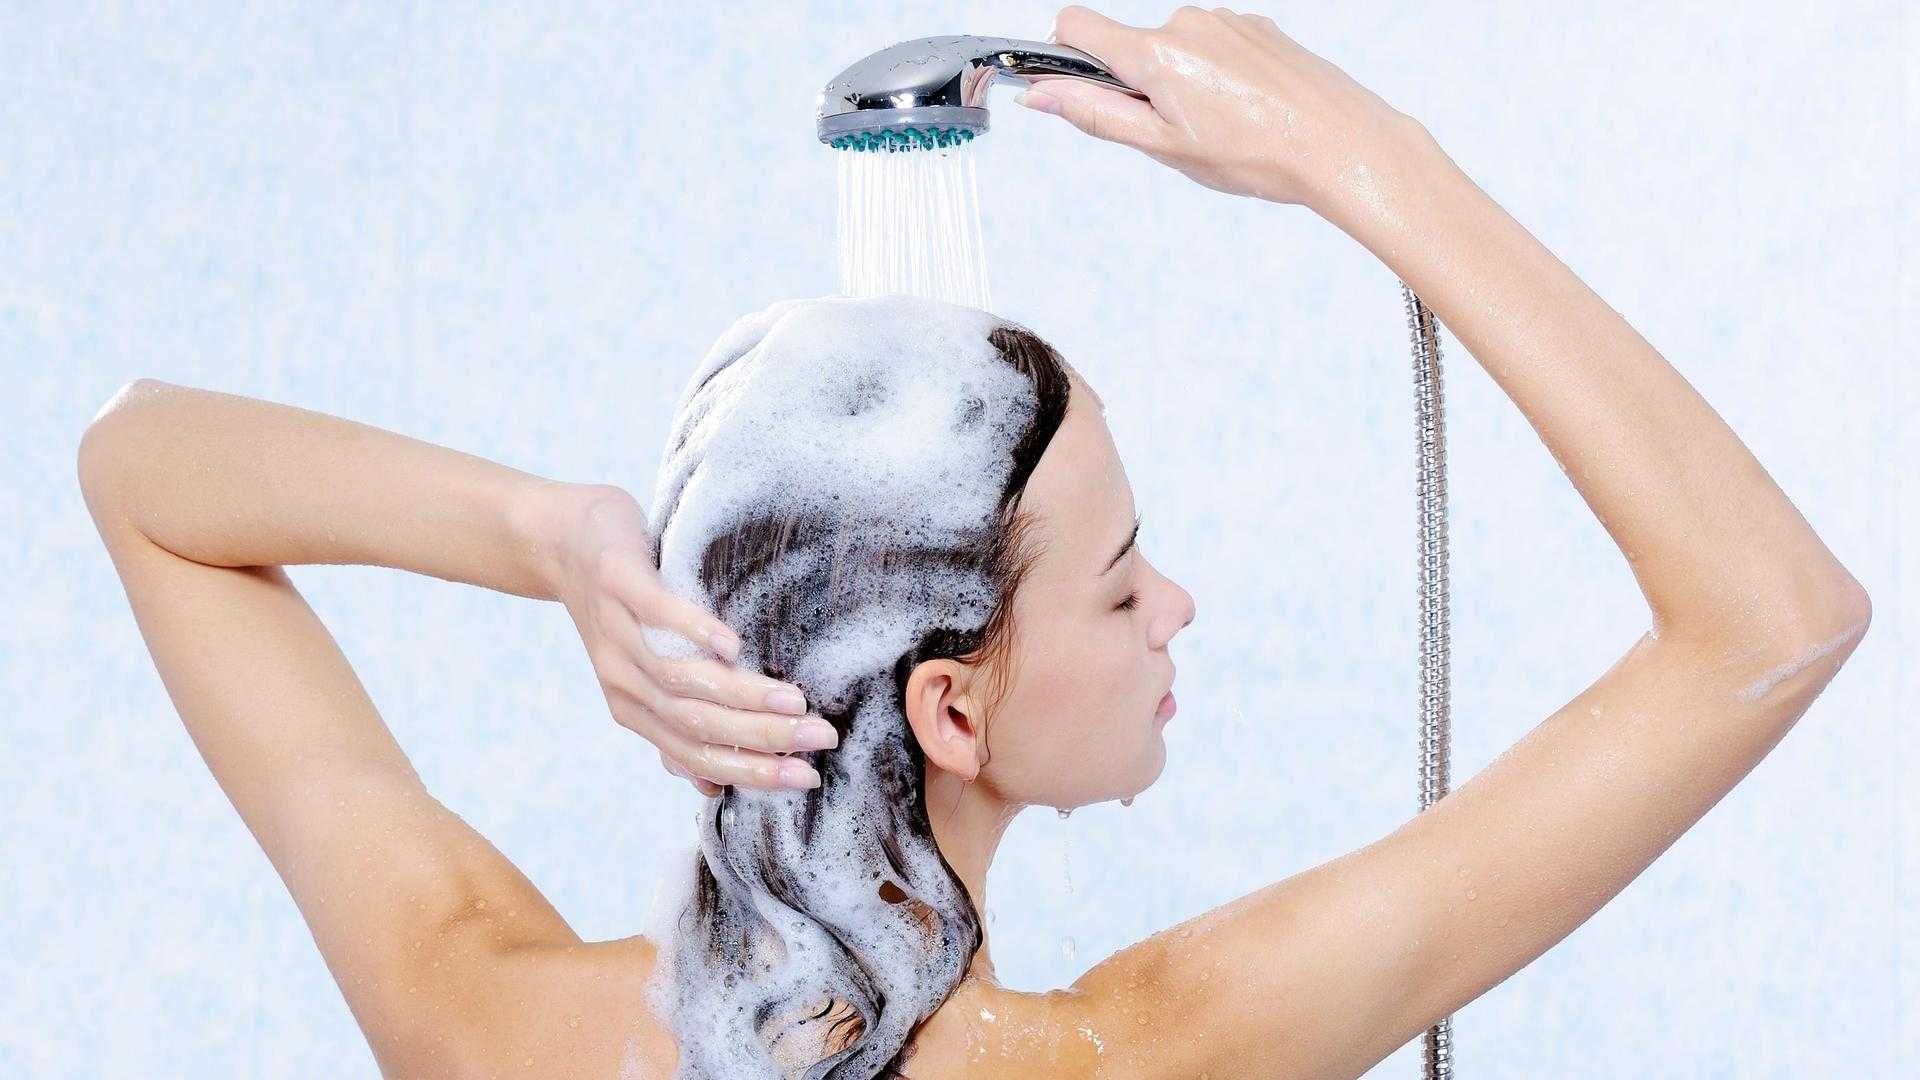 ️рейтинг лучших шампуней 2020 года для желающих получить волосы как у рапунцель